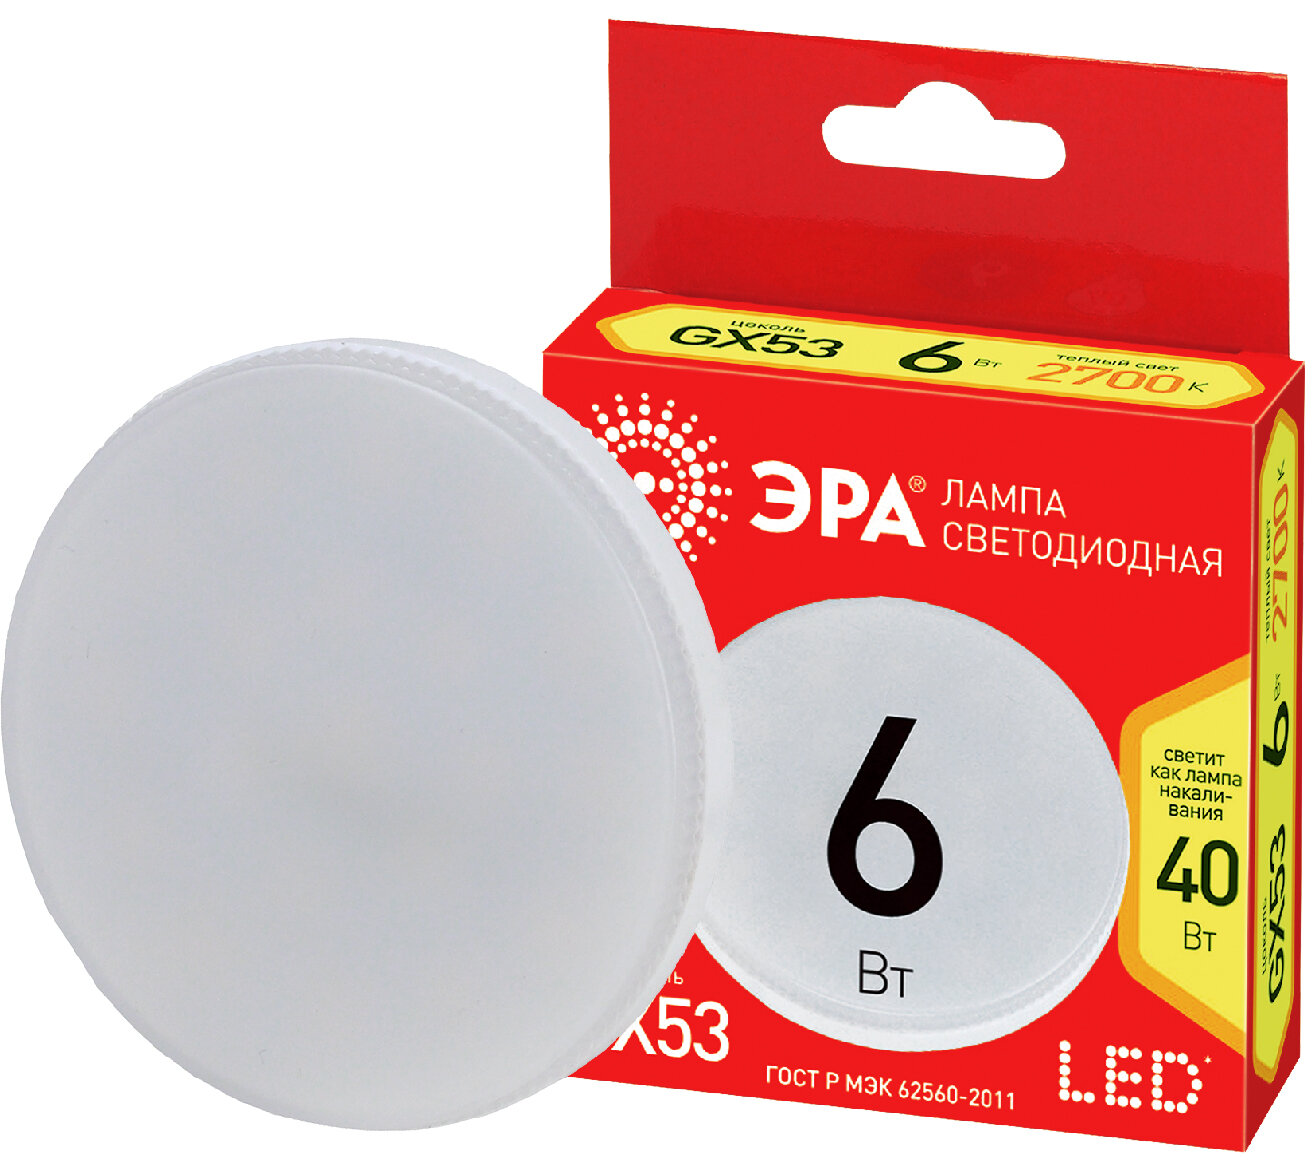 Лампочка светодиодная ЭРА RED LINE LED GX-6W-827-GX53 R 8 Вт таблетка теплый белый свет